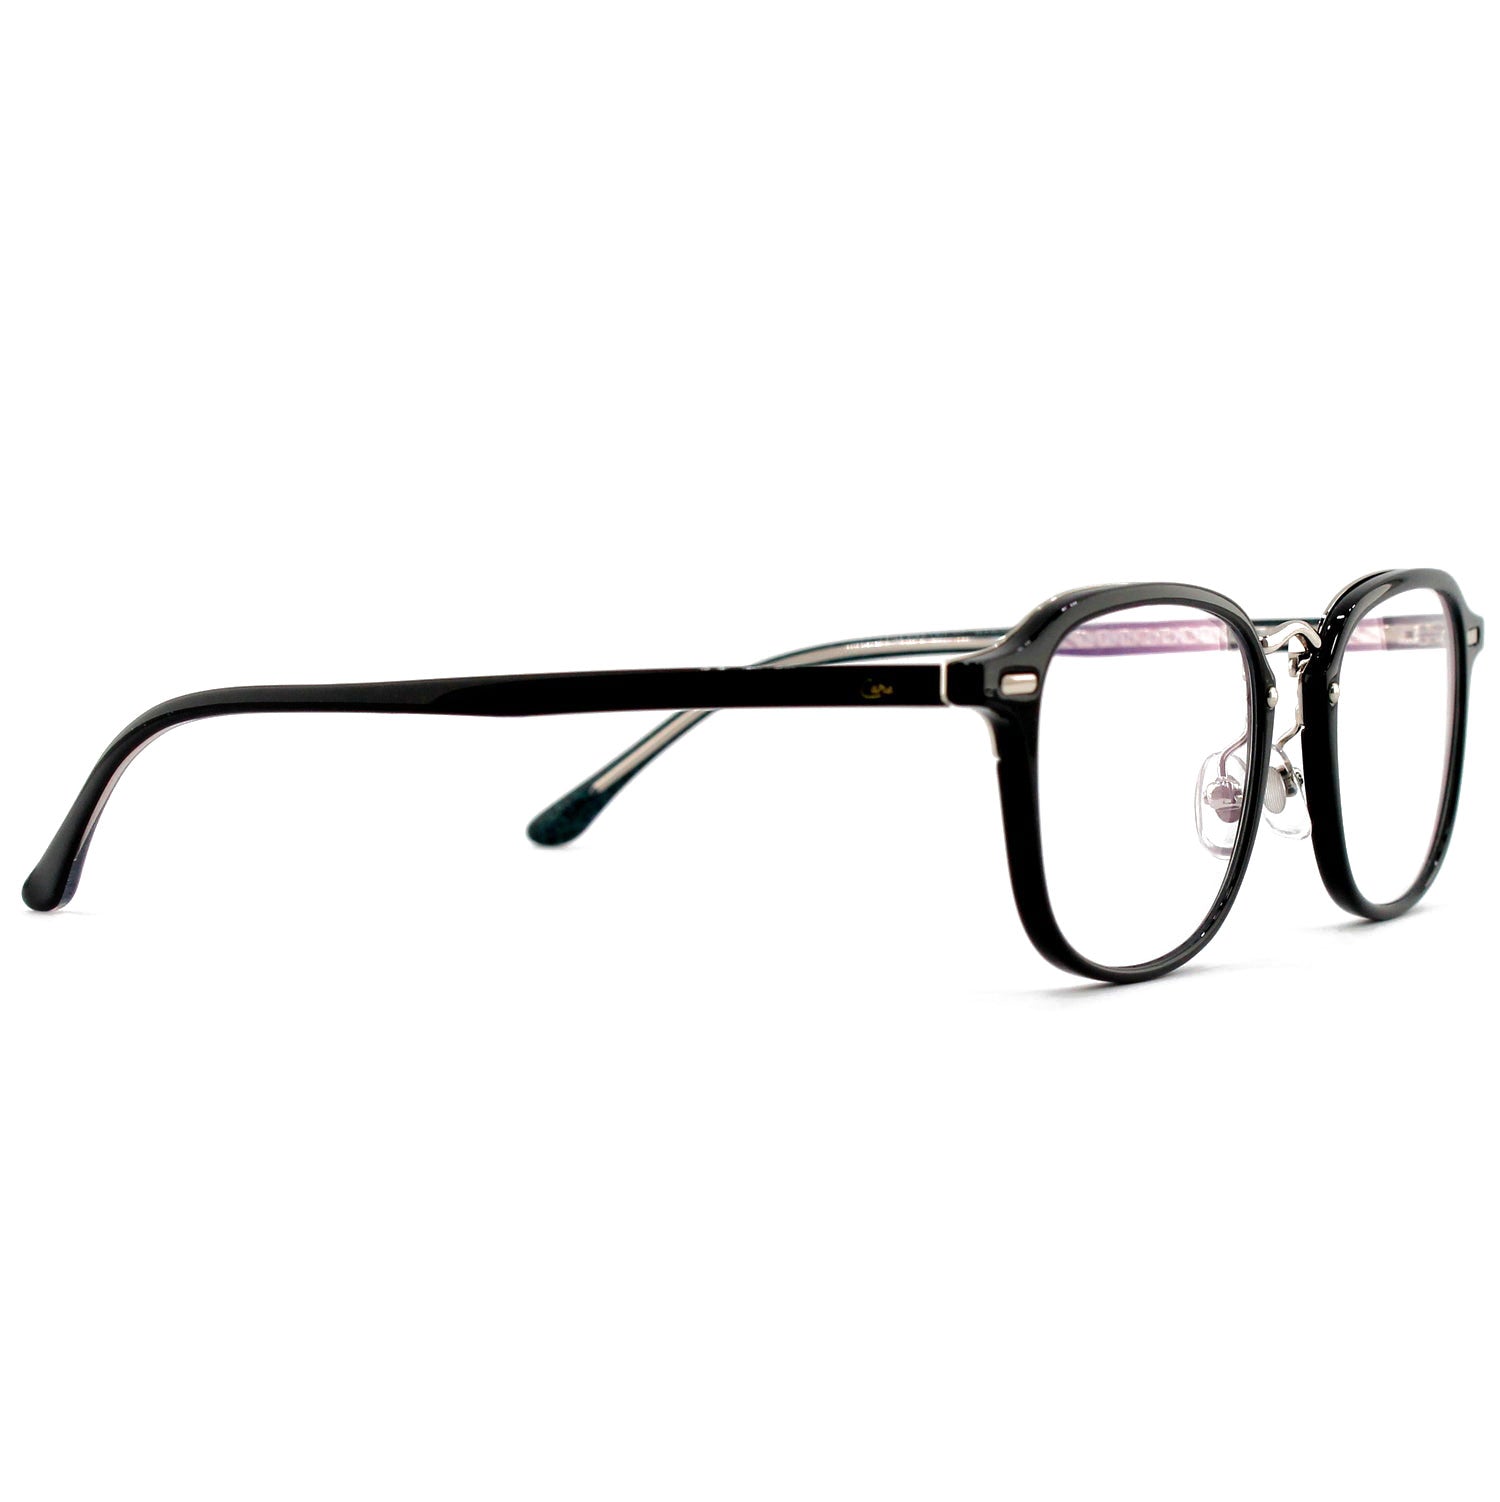 Ottika Care - Blue Light Blocking Glasses - Adult | Model 98376